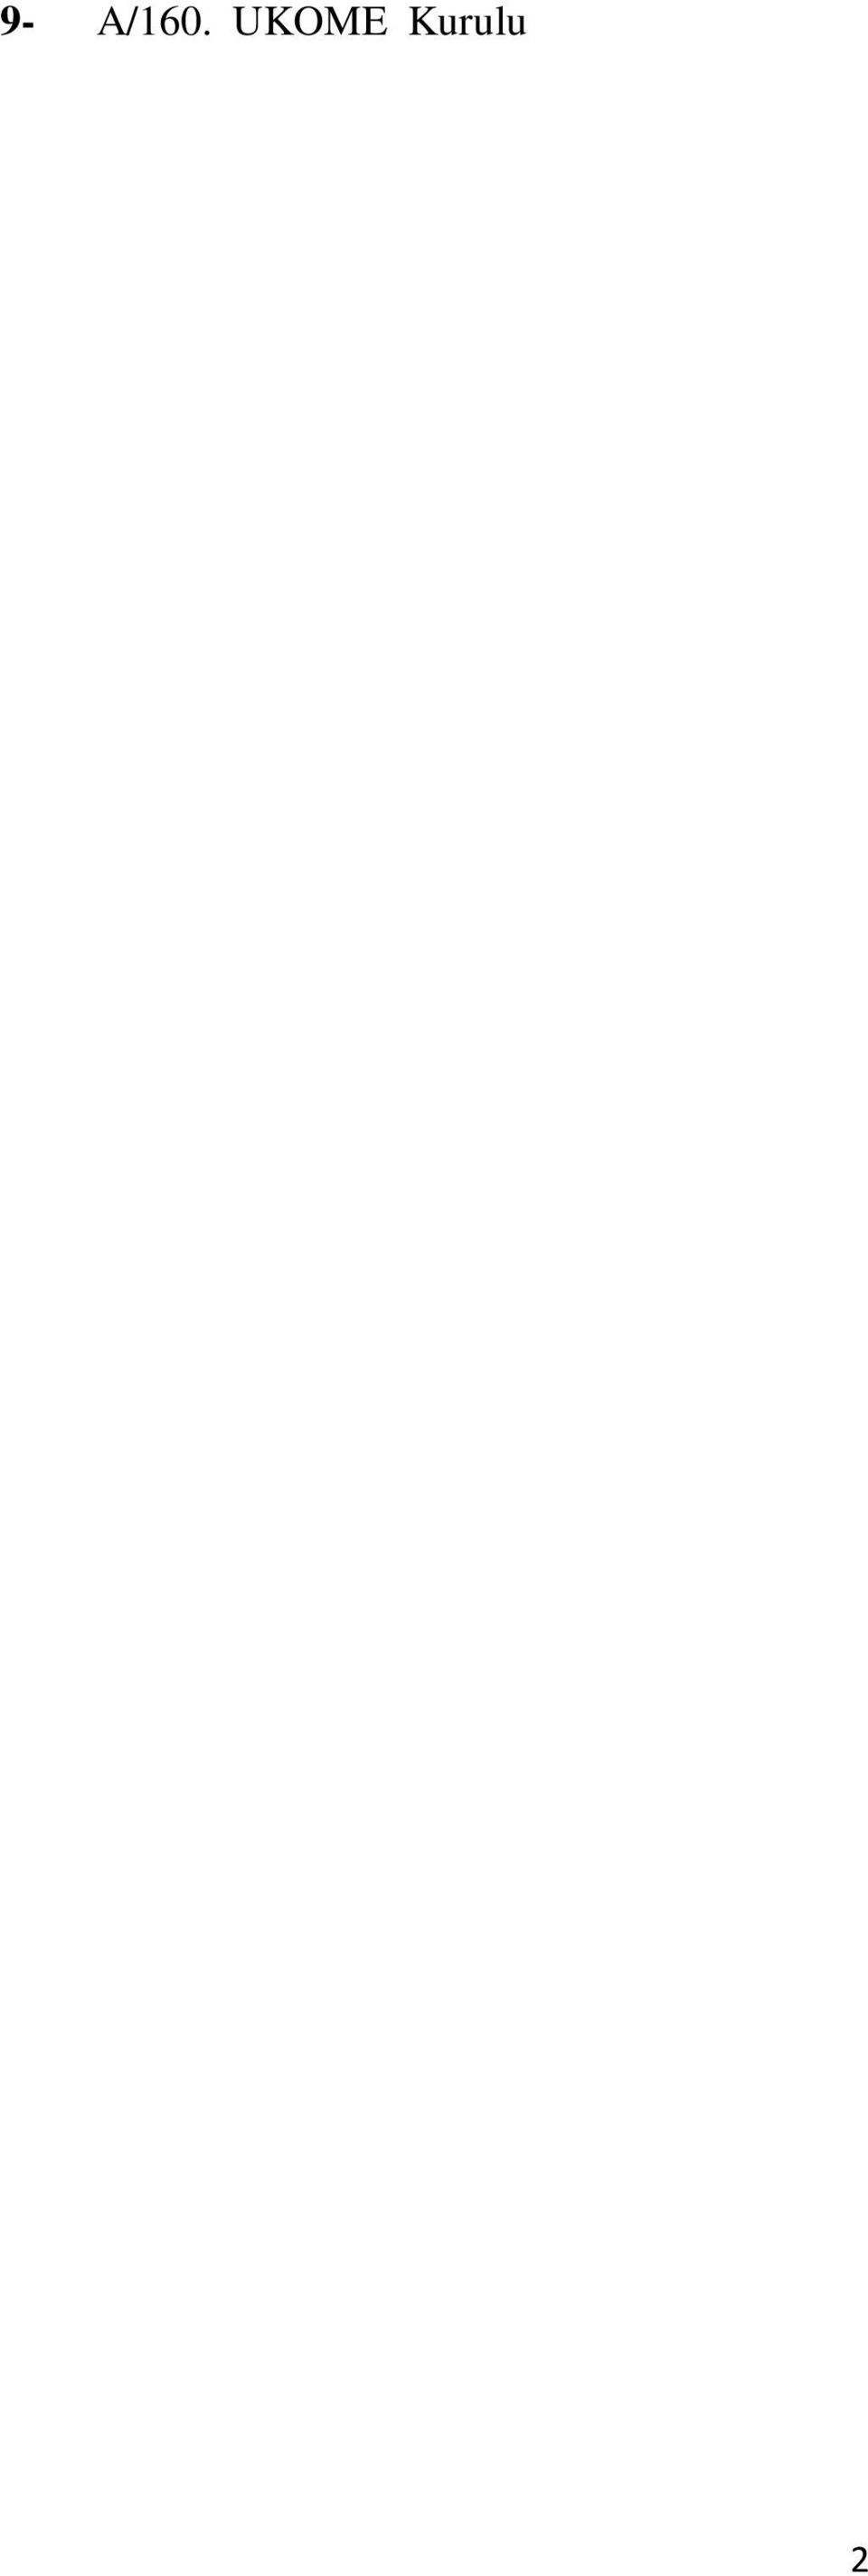 nolu dosyası ile, Tekirdağ Büyükşehir Belediye Başkanlığı aleyhine, Tekirdağ Büyükşehir Belediyesi M Plaka Hizmet Yönetmeliği nin geçici 4 üncü maddesinin yeniden düzenlenmesine ilişkin, 09/09/2015